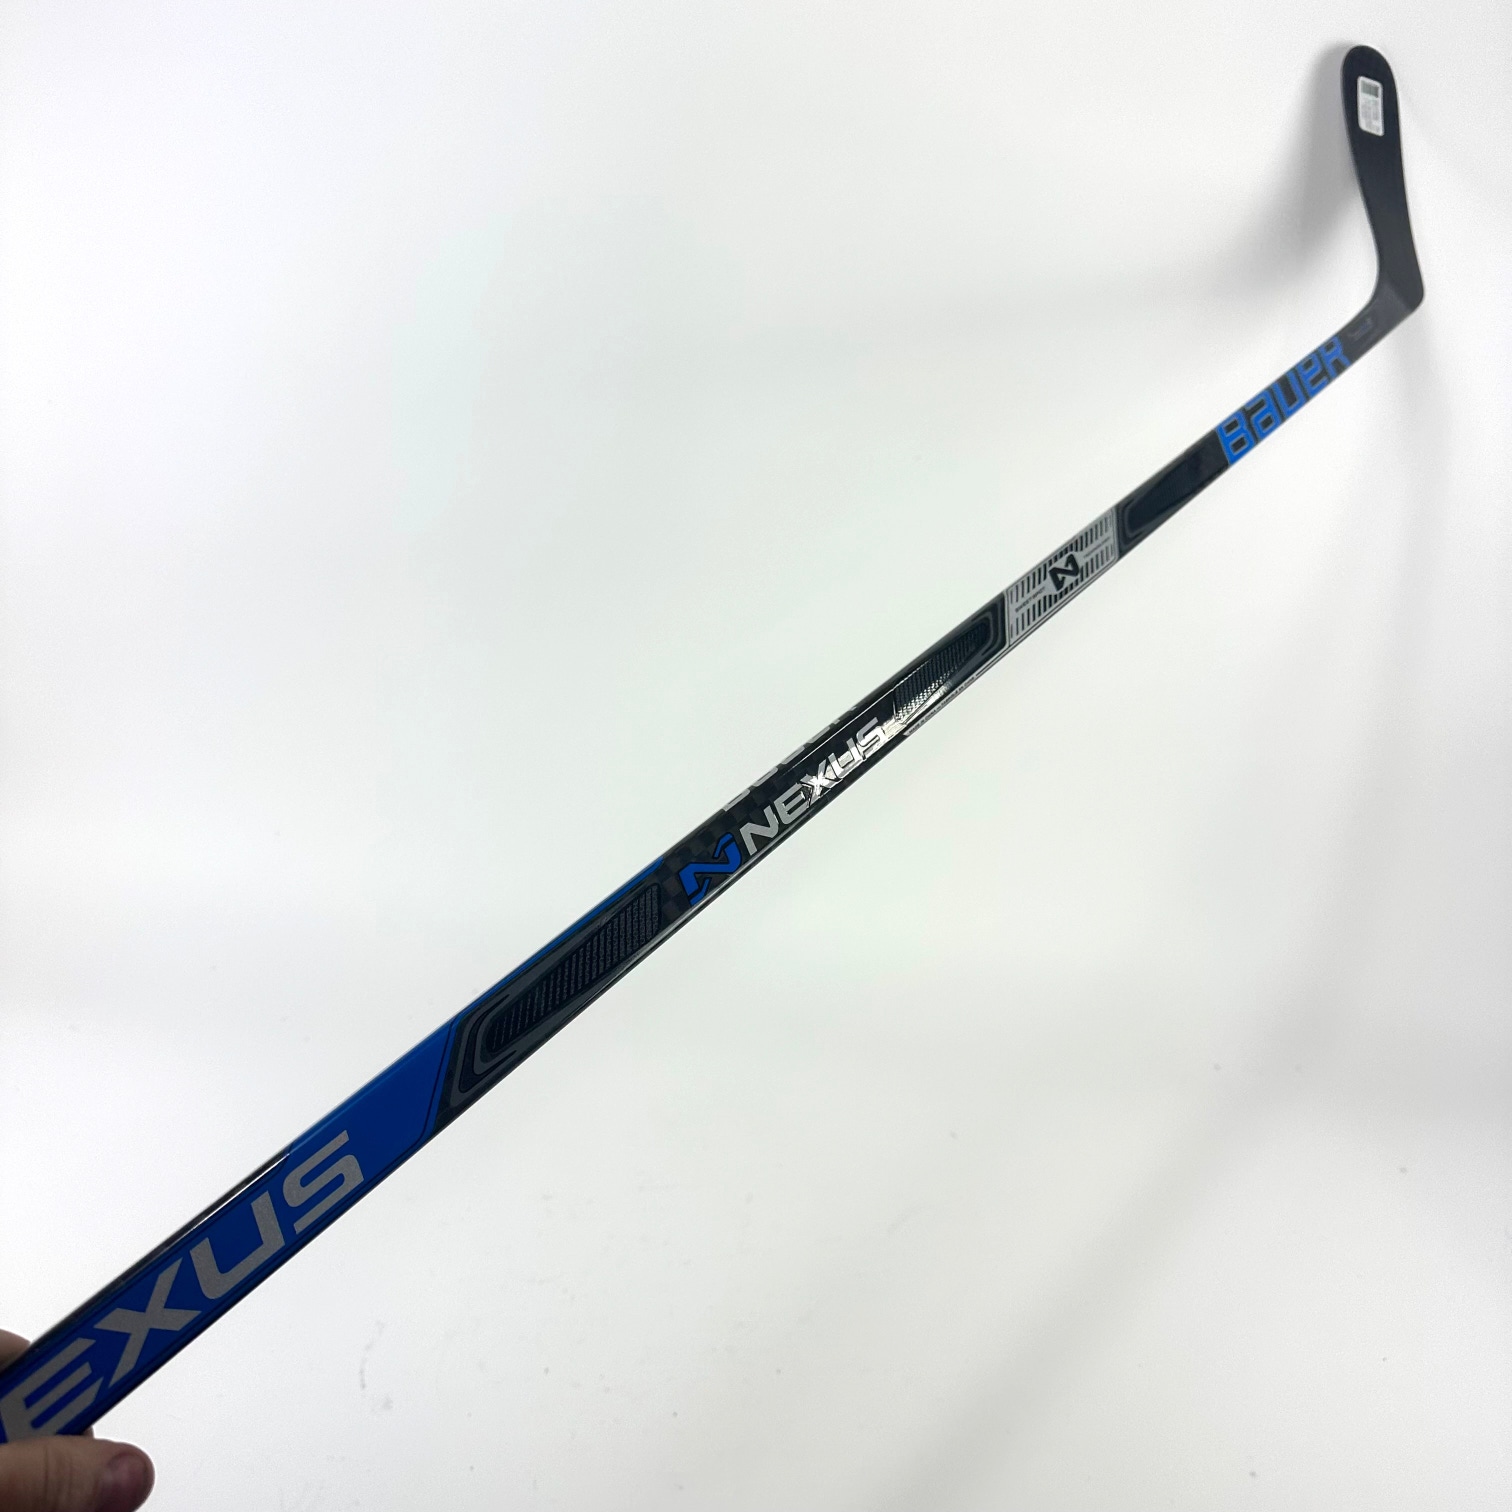 Brand New Bauer Left Hand Team Nexus Hockey Stick P92 Curve 87 Flex - #G48